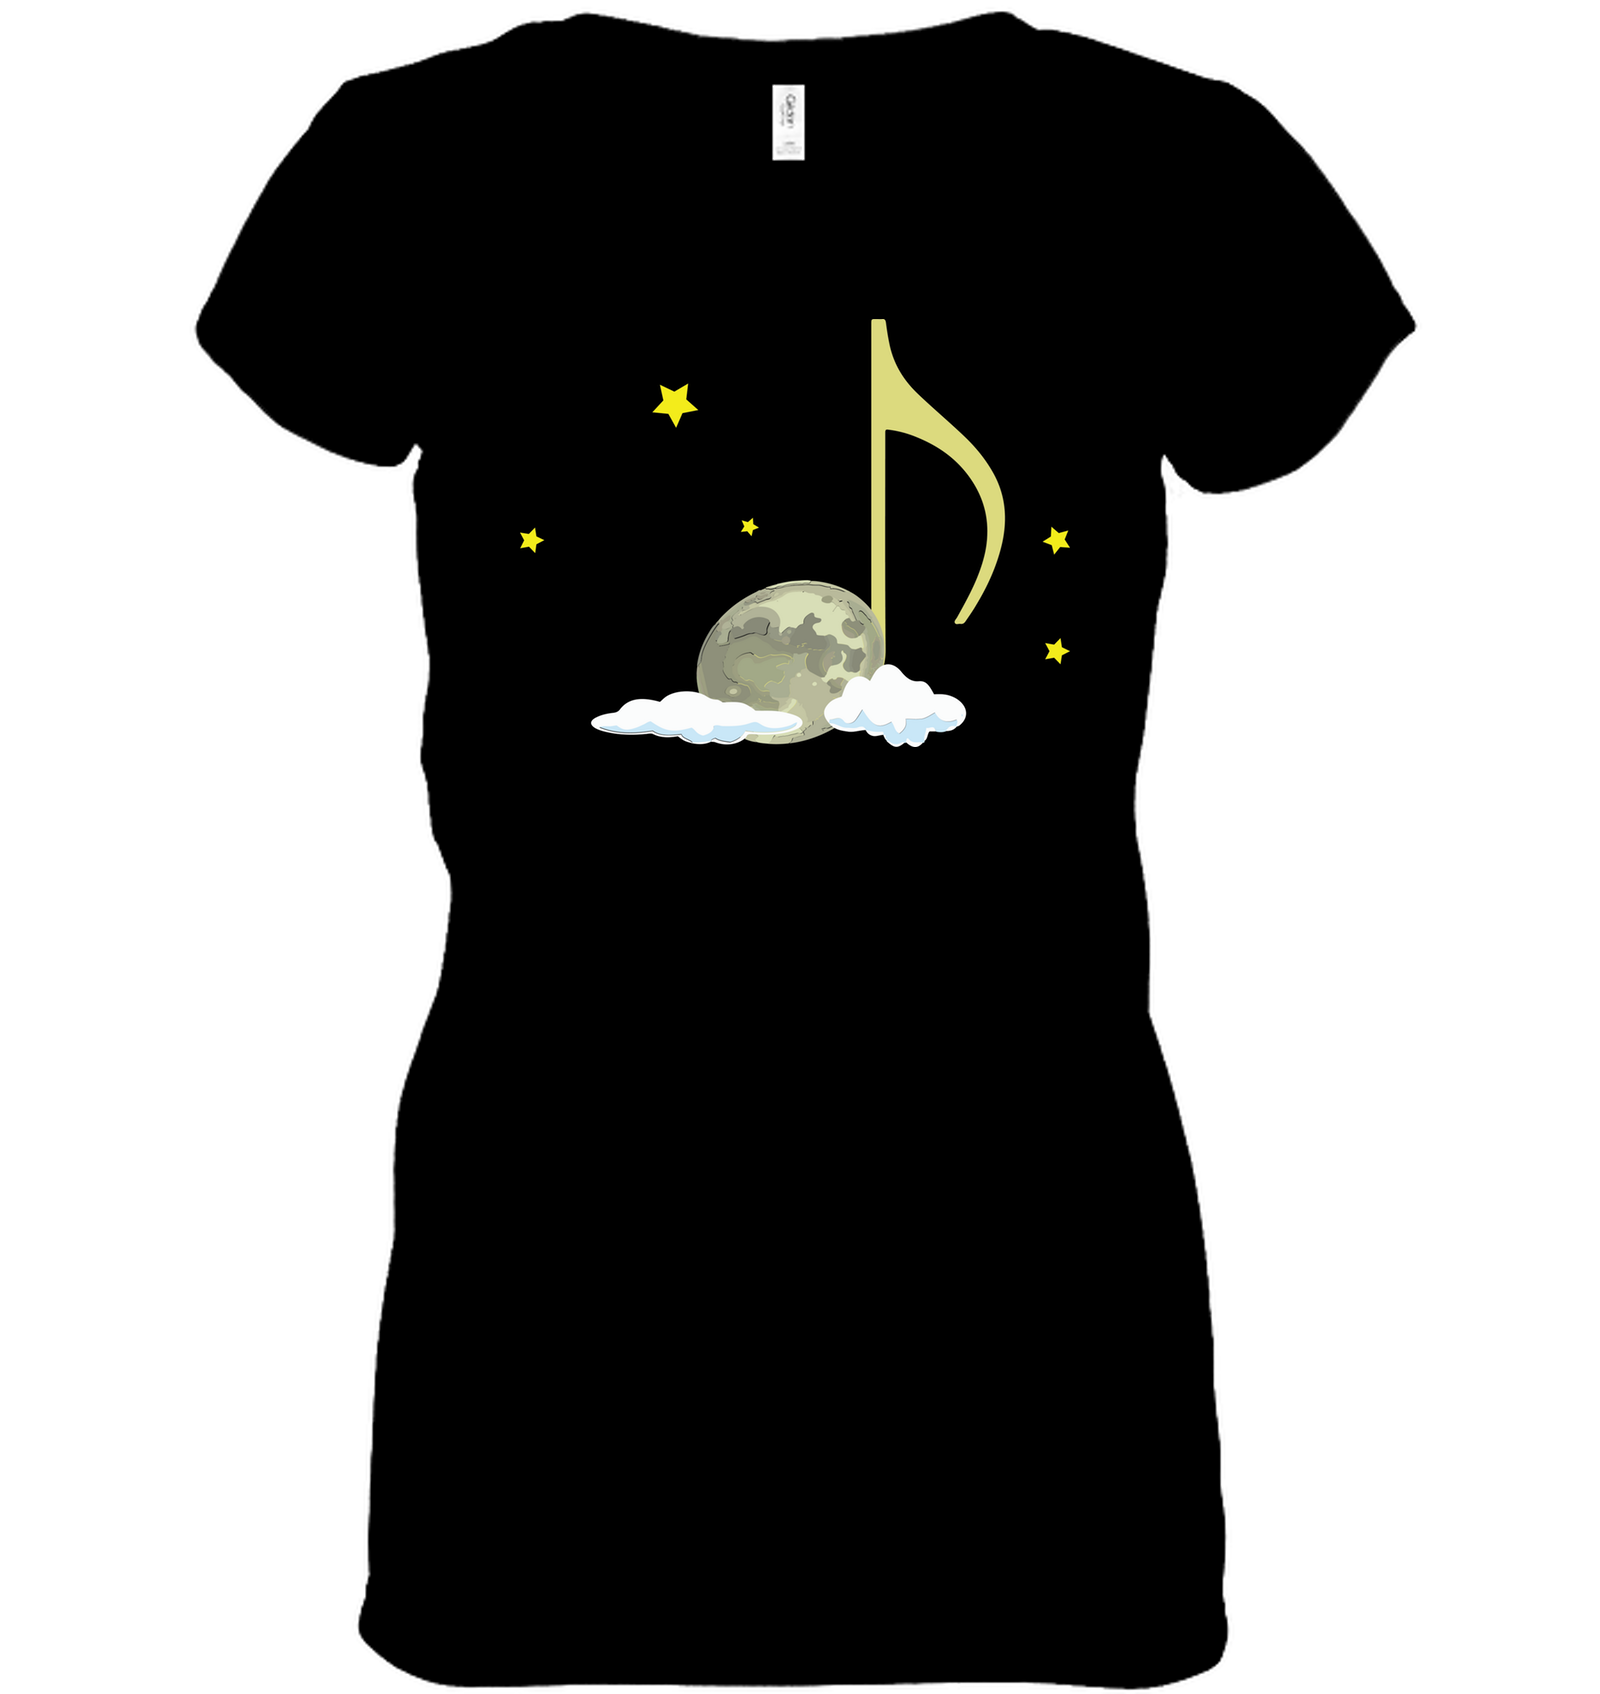 Night Note and stars - Hanes Women's Nano-T® V-Neck T-Shirt